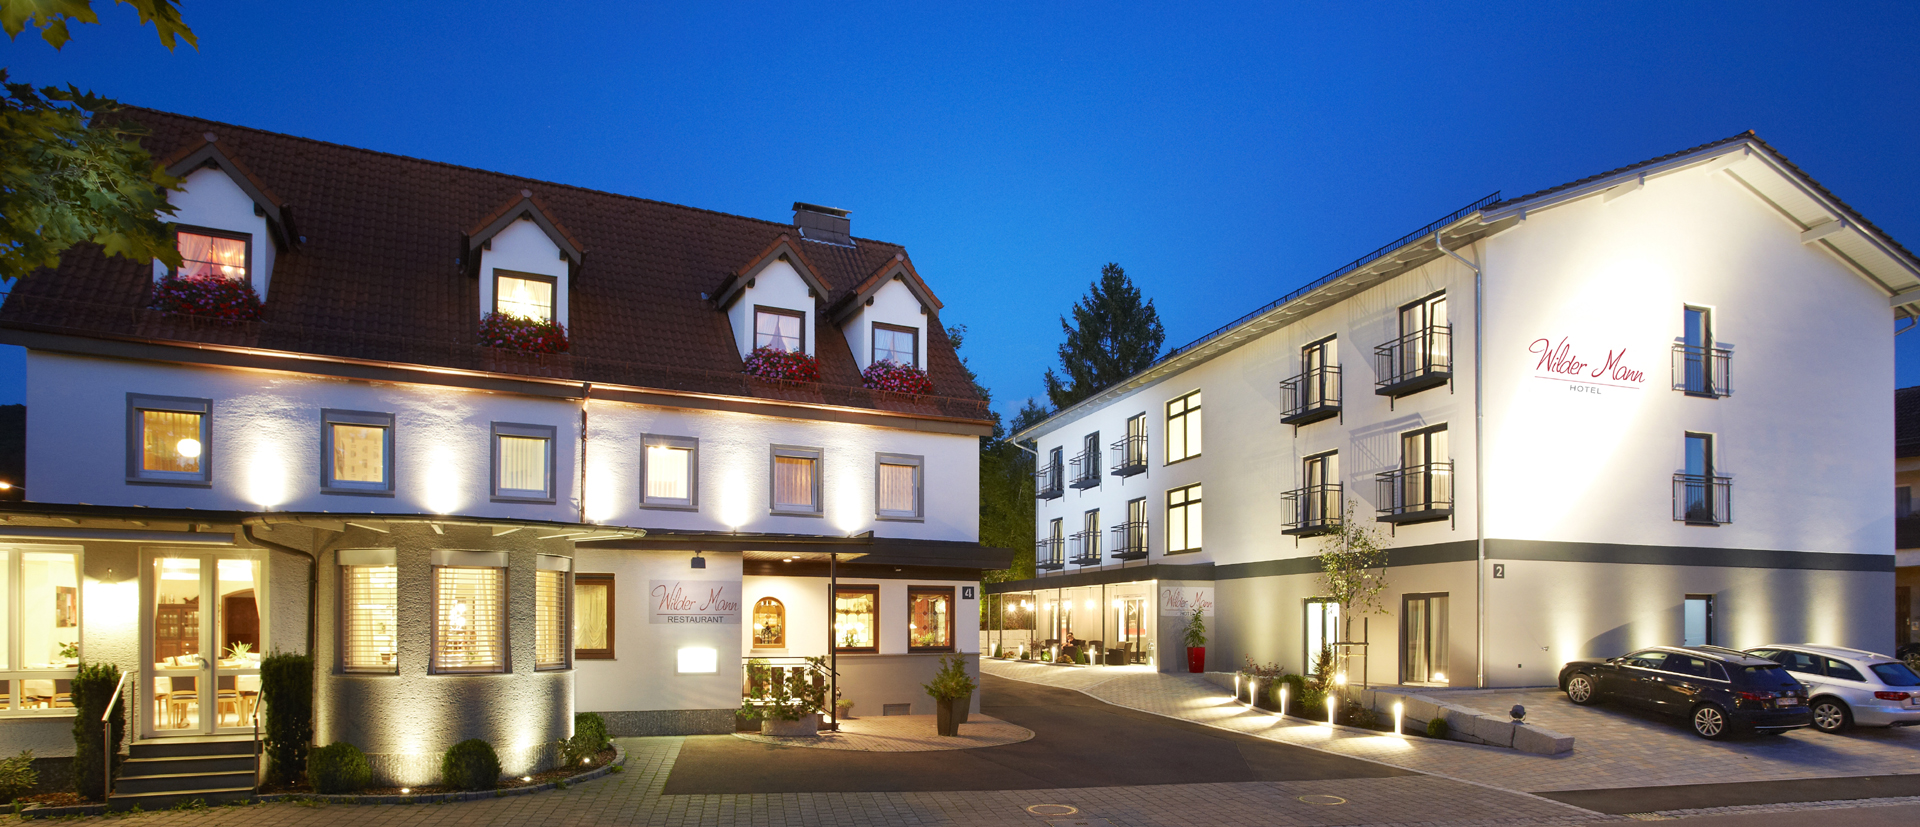 Restaurant & Hotel Wilder Mann in Aalen - nach Umbau